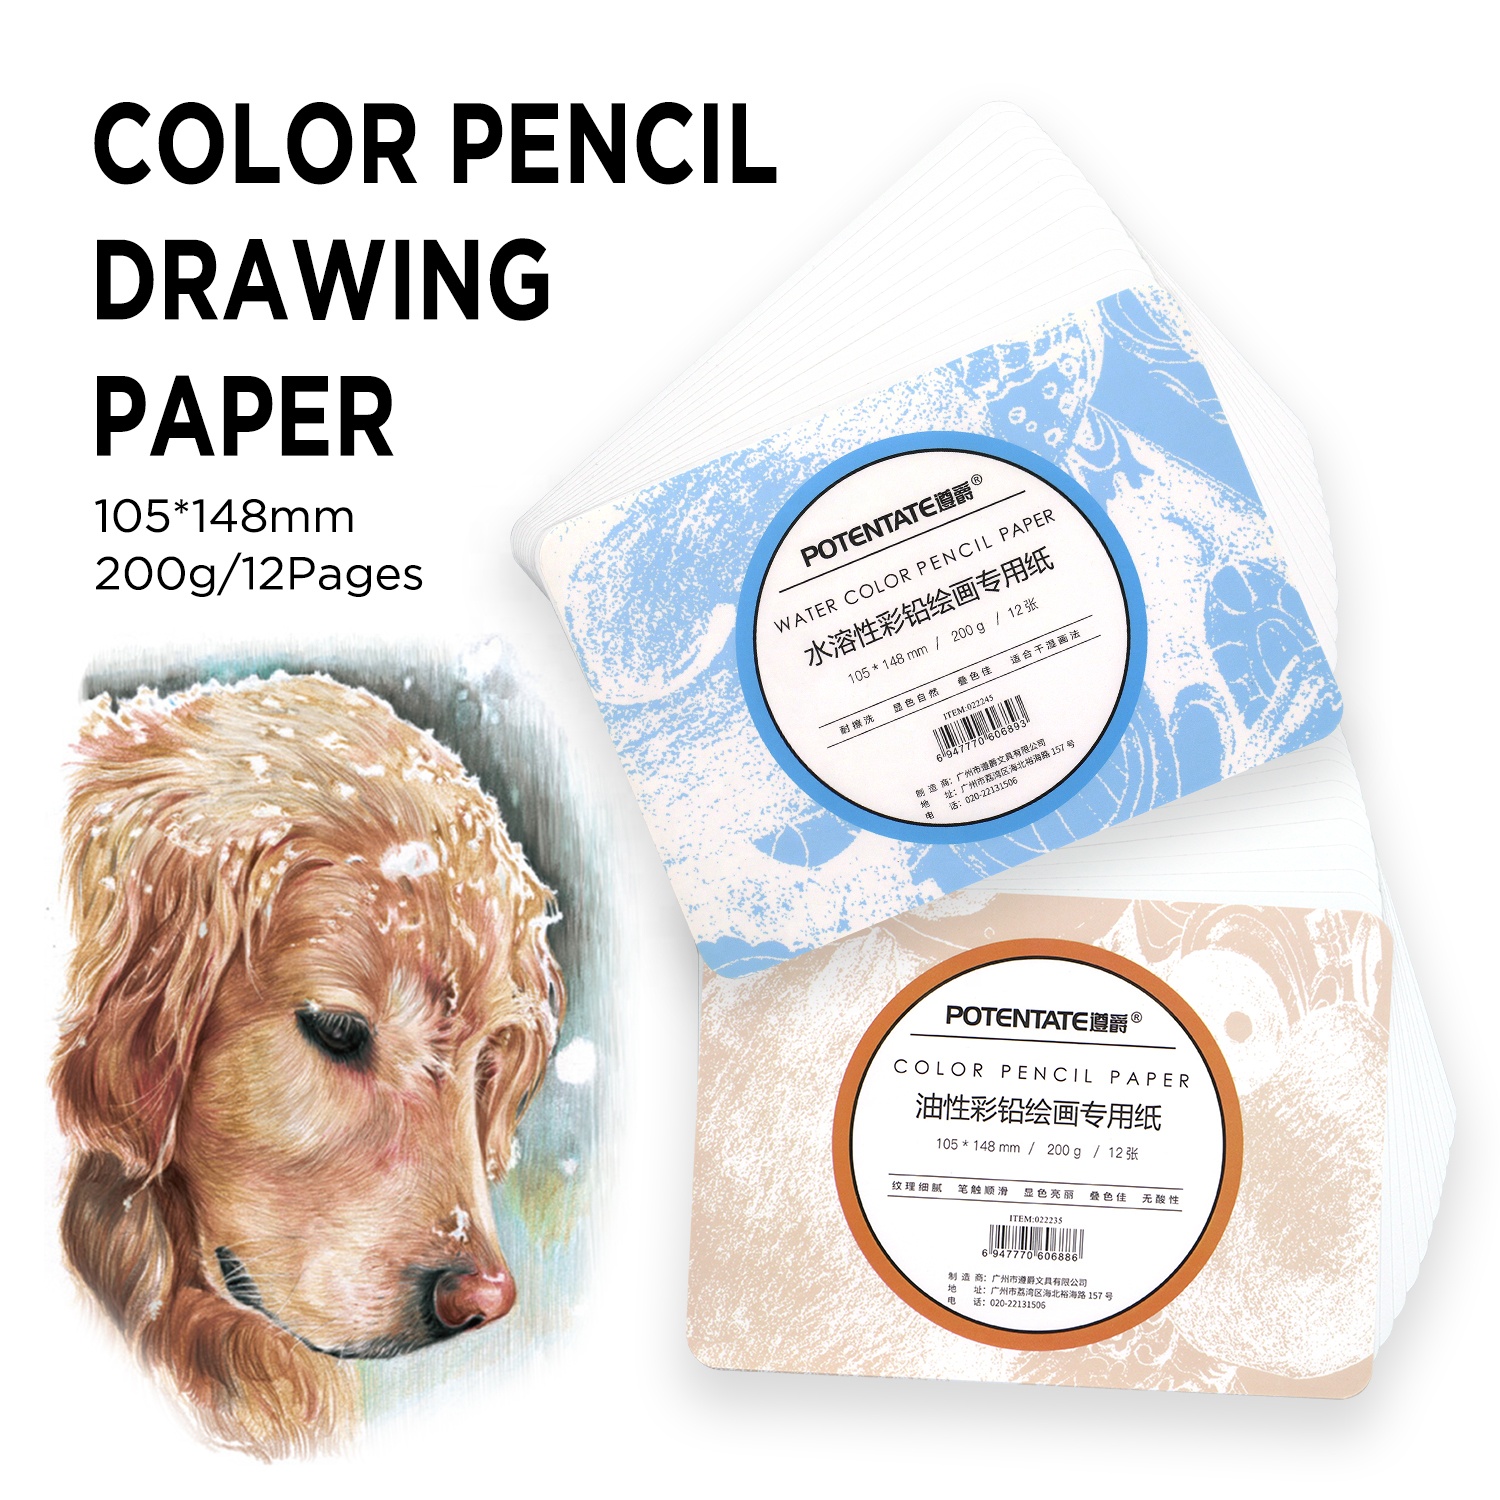 유력한 A6 프리미엄 스케치 드로잉 페이퍼 유성 연필 및 물 색상 연필 200GSM 종이 패드/12 페이지 1